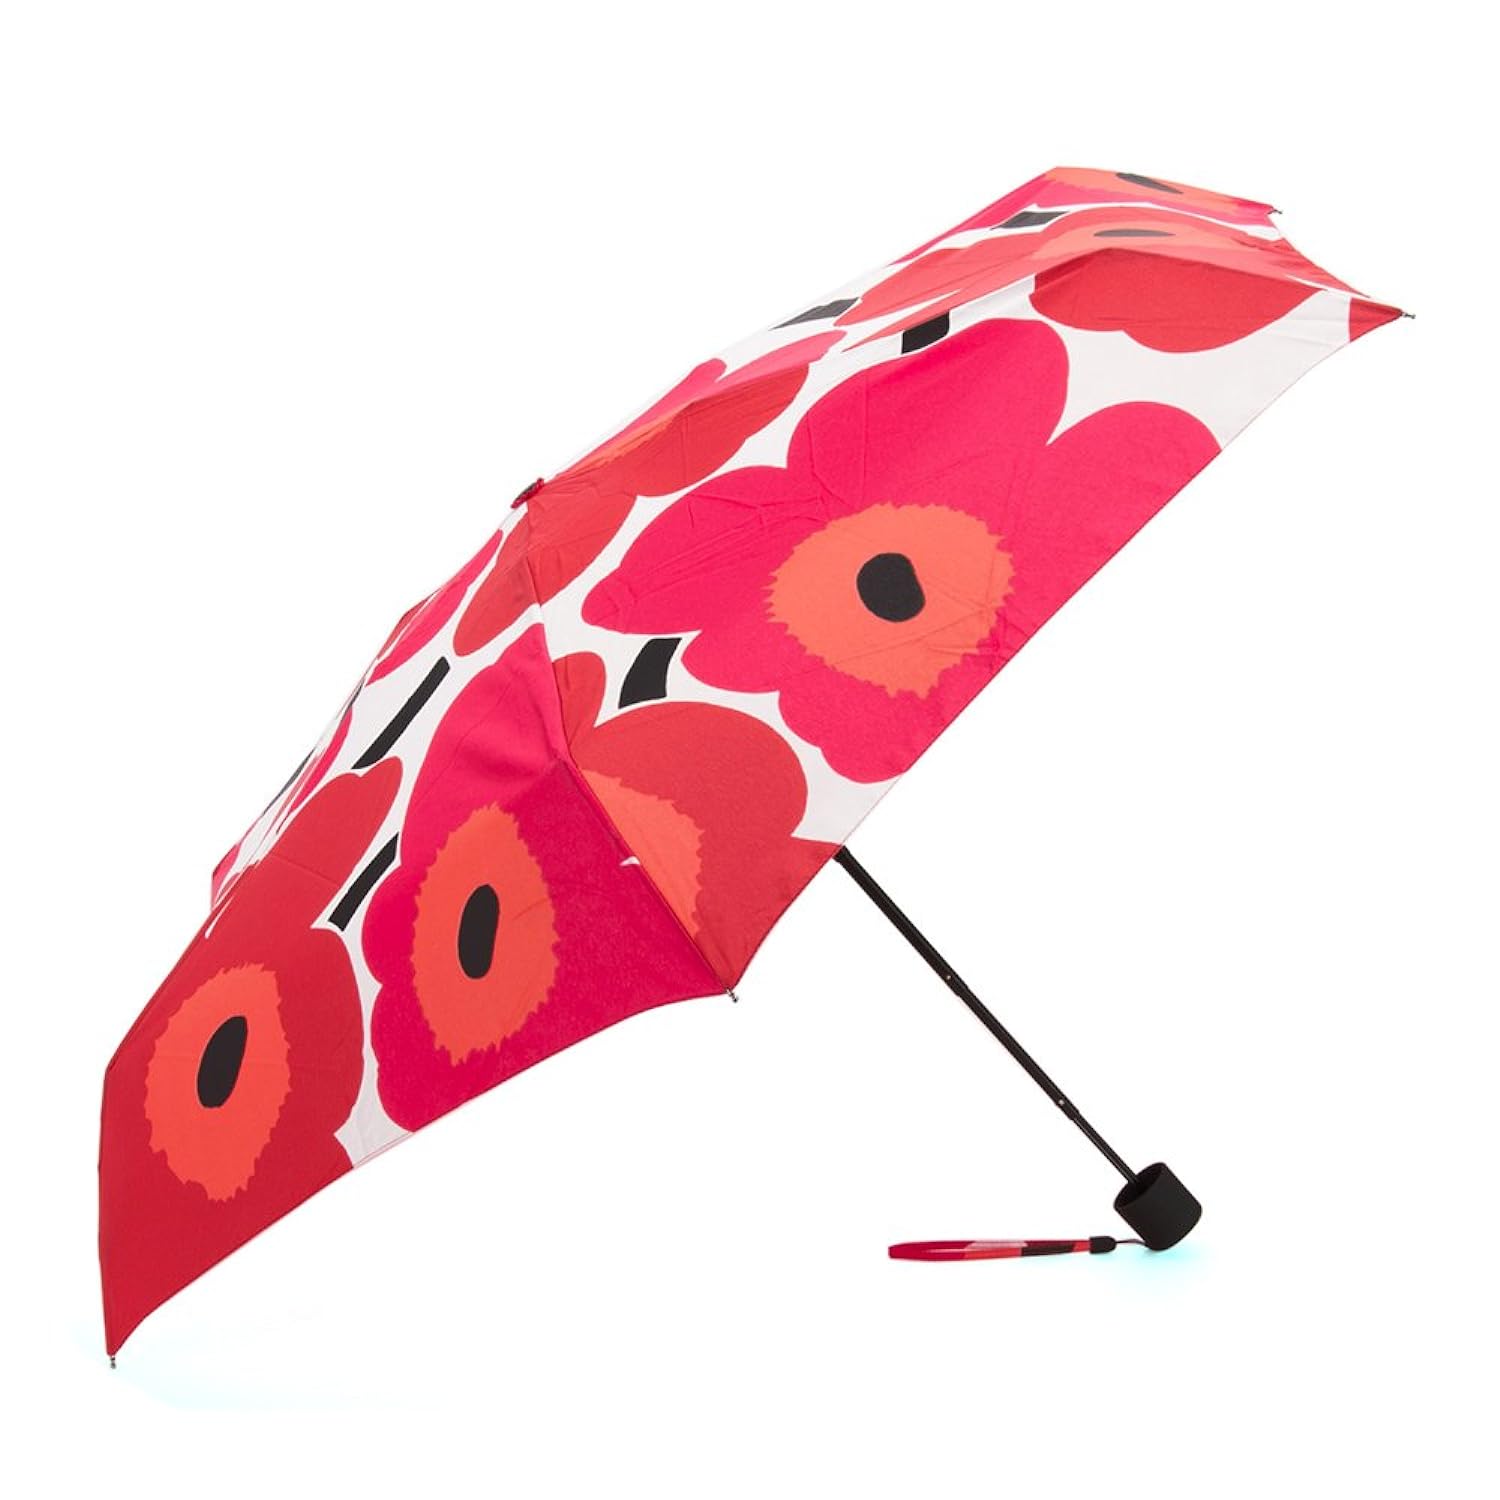 マリメッコ marimekko 雨傘 折りたたみ傘 かさ レディース ウニッコレッド 038654-001 [並行輸入品]